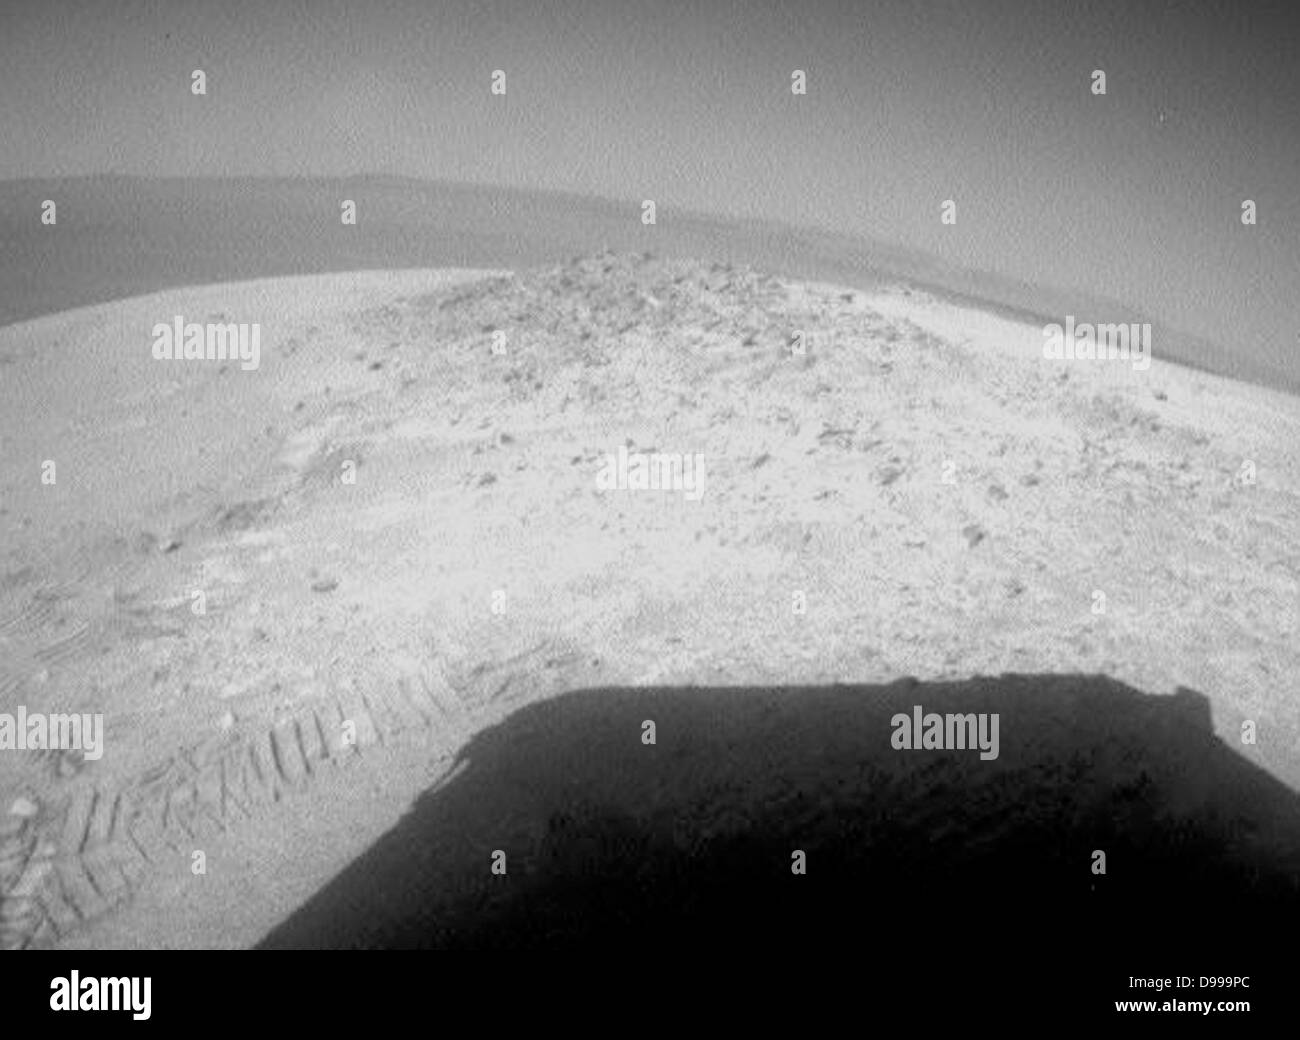 NASA's Mars Exploration Rover Gelegenheit fuhr ungefähr 12 Fuß am 8. Mai 2012, nachdem er 19 Wochen lang an einem Ort, während Solarenergie auch für das Fahren während der Mars-winter niedrig war. Stockfoto